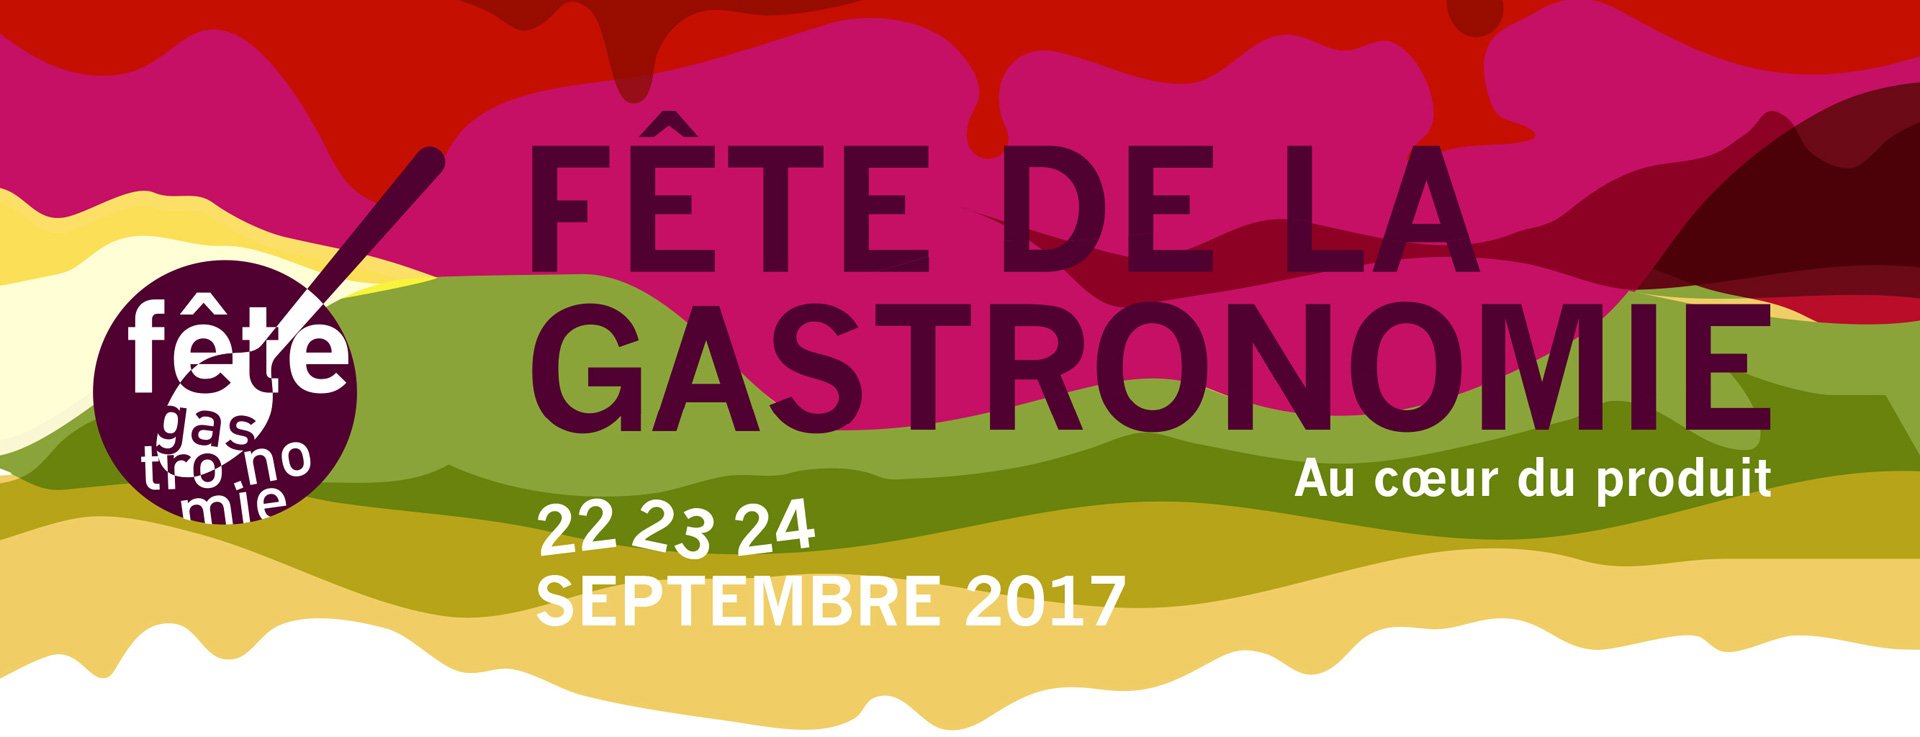 The Fête de la Gastronomie to be celebrated on 22 September at Le Cordon Bleu Paris institute